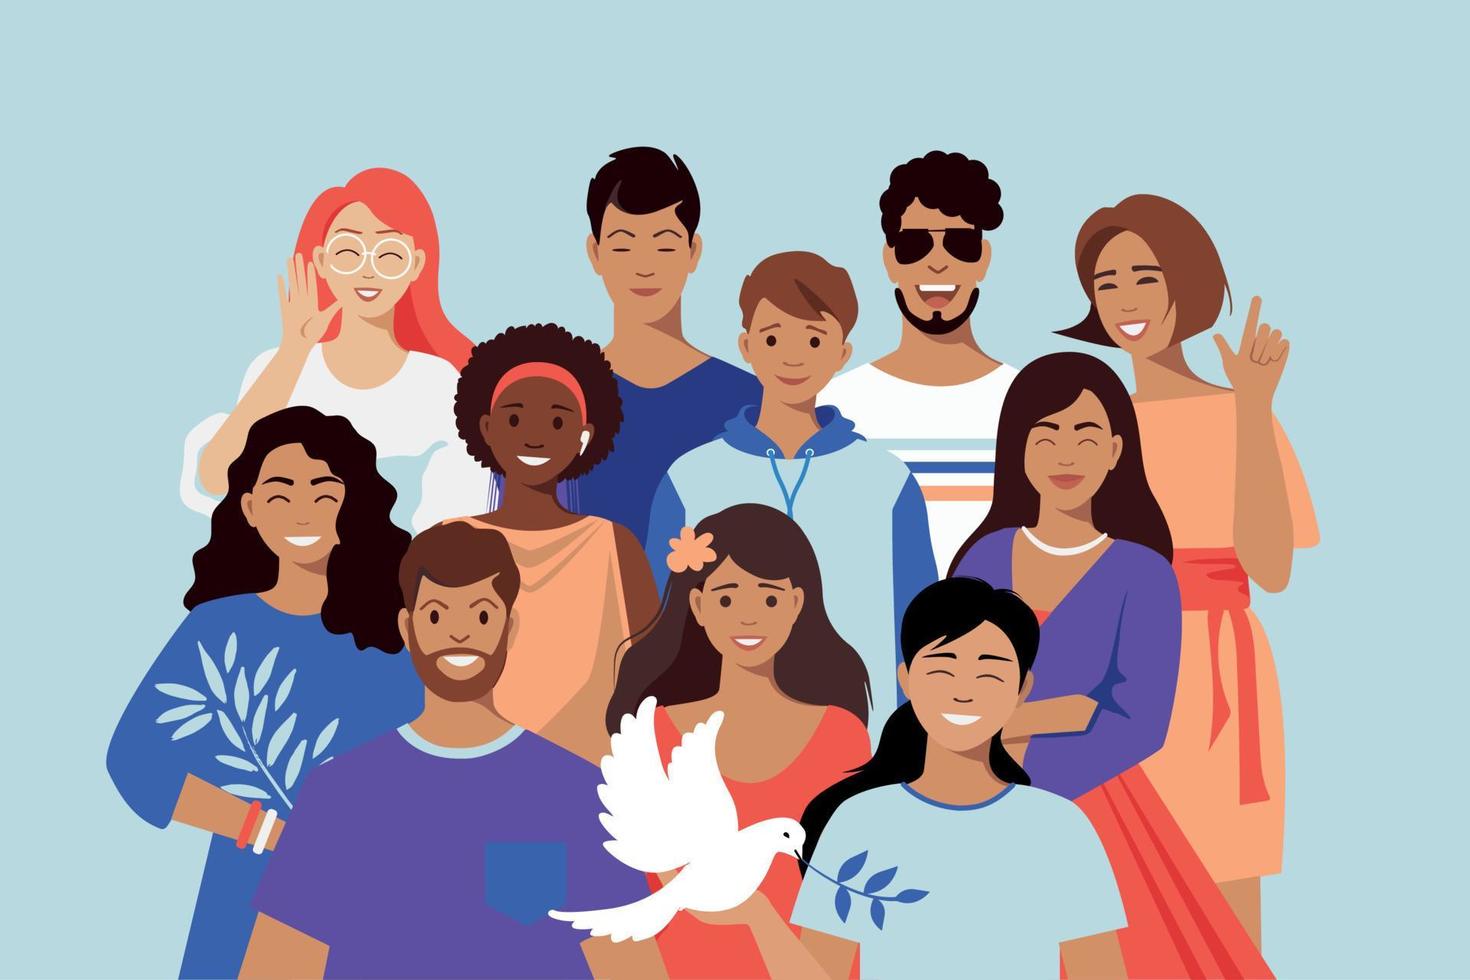 equipo multicultural, amigos. la paloma es un símbolo de paz. unidad en la diversidad. personas de diferentes nacionalidades. sociedad multinacional. vector